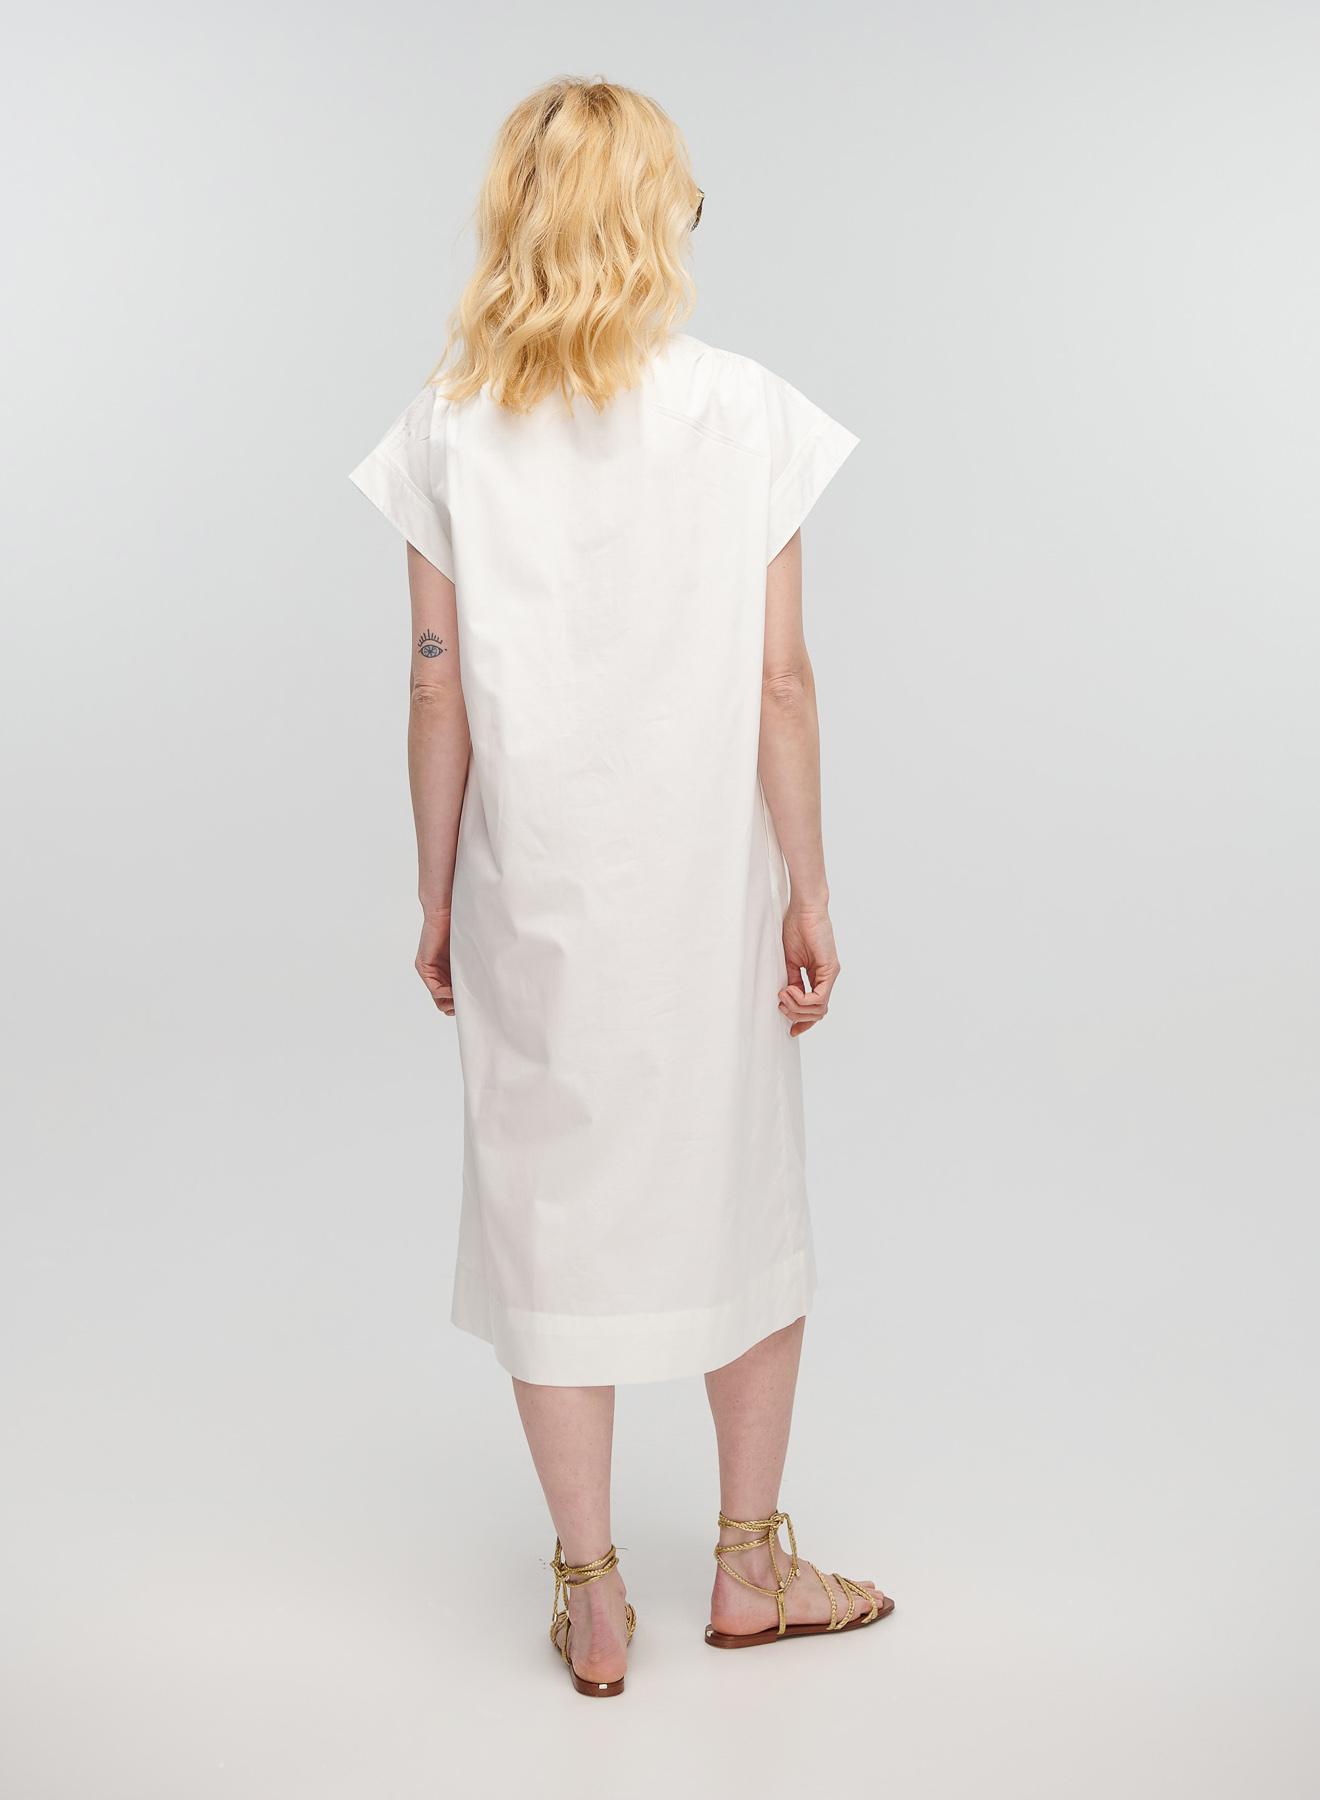 Λευκό μακρύ Φόρεμα αμάνικο με V λαιμόκοψη, ζώνη και σχισμή μπροστά Milla - 3